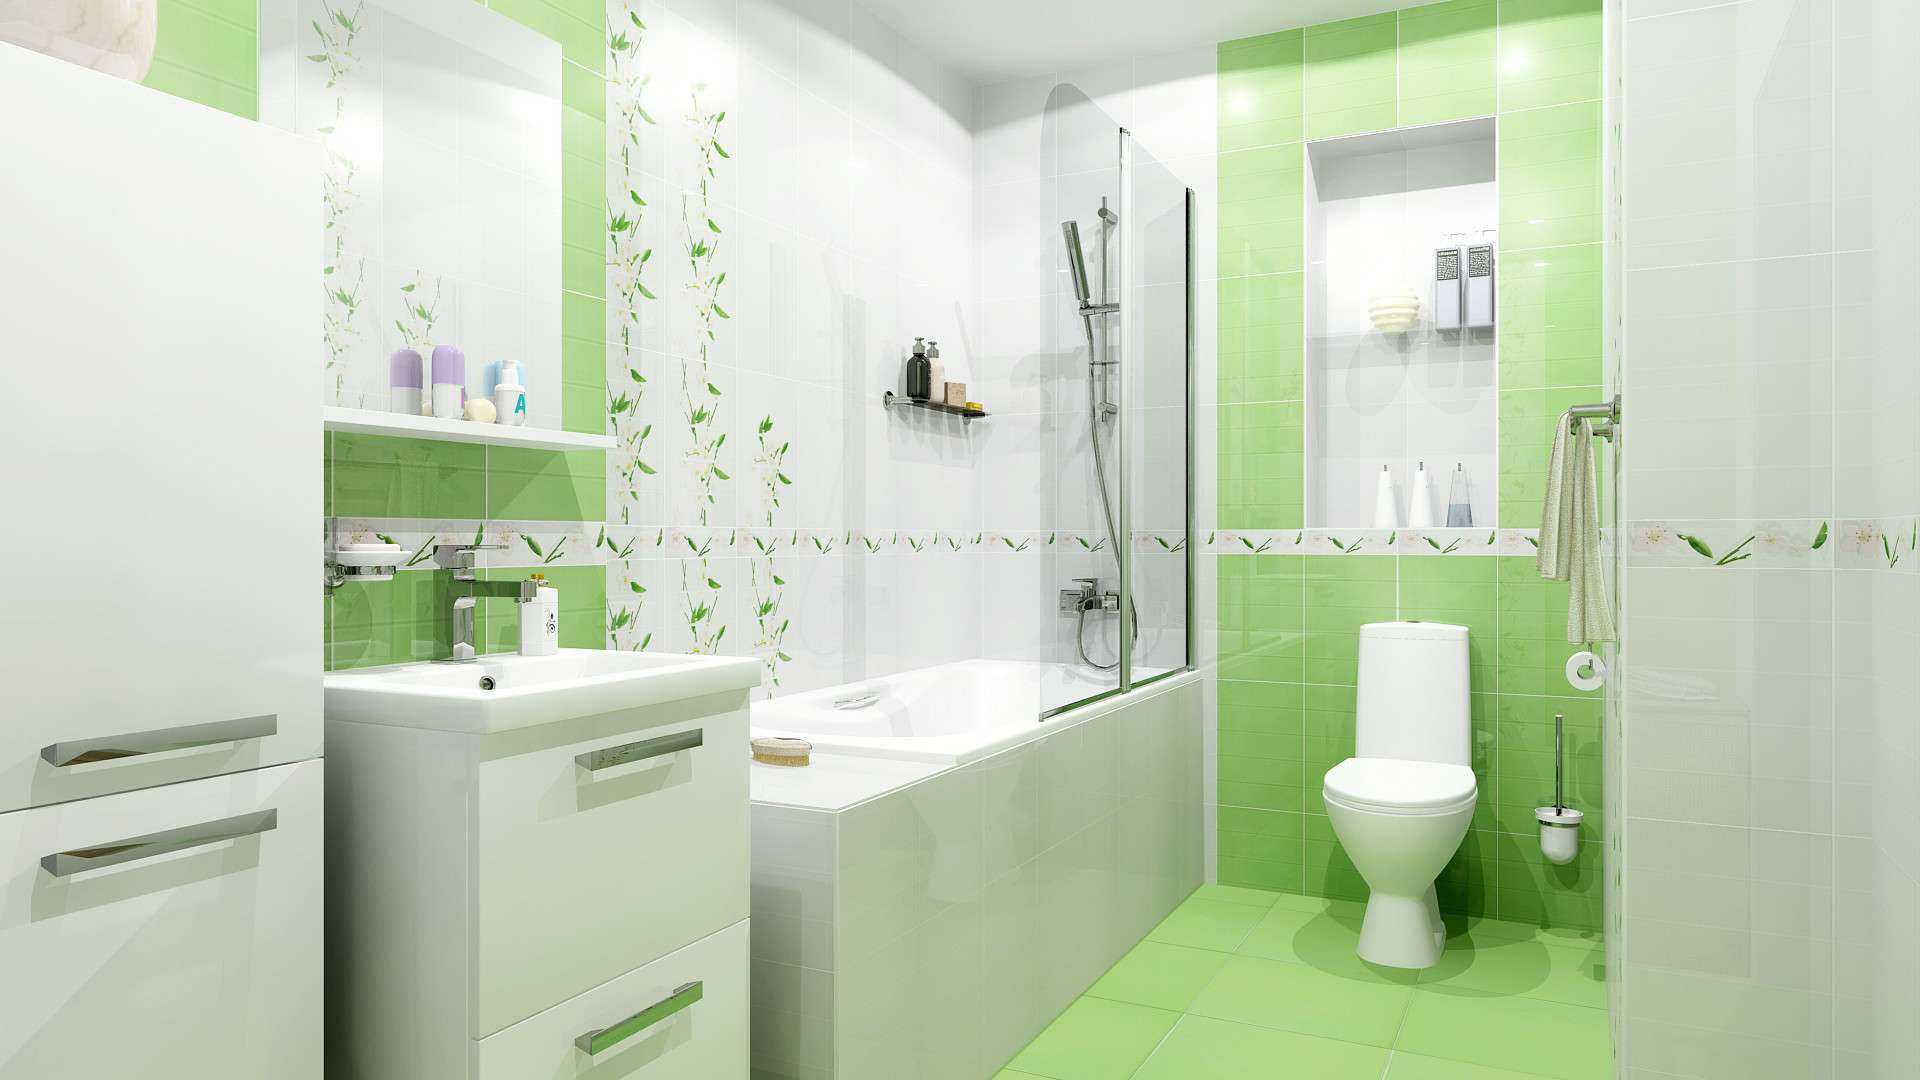 Плитку для маленькой ванной комнаты нужно выбирать с осторожностью, чтобы визуально не сузить и без того крохотное пространство На какие фото плитки с дизайном маленькой ванной стоит ориентироваться